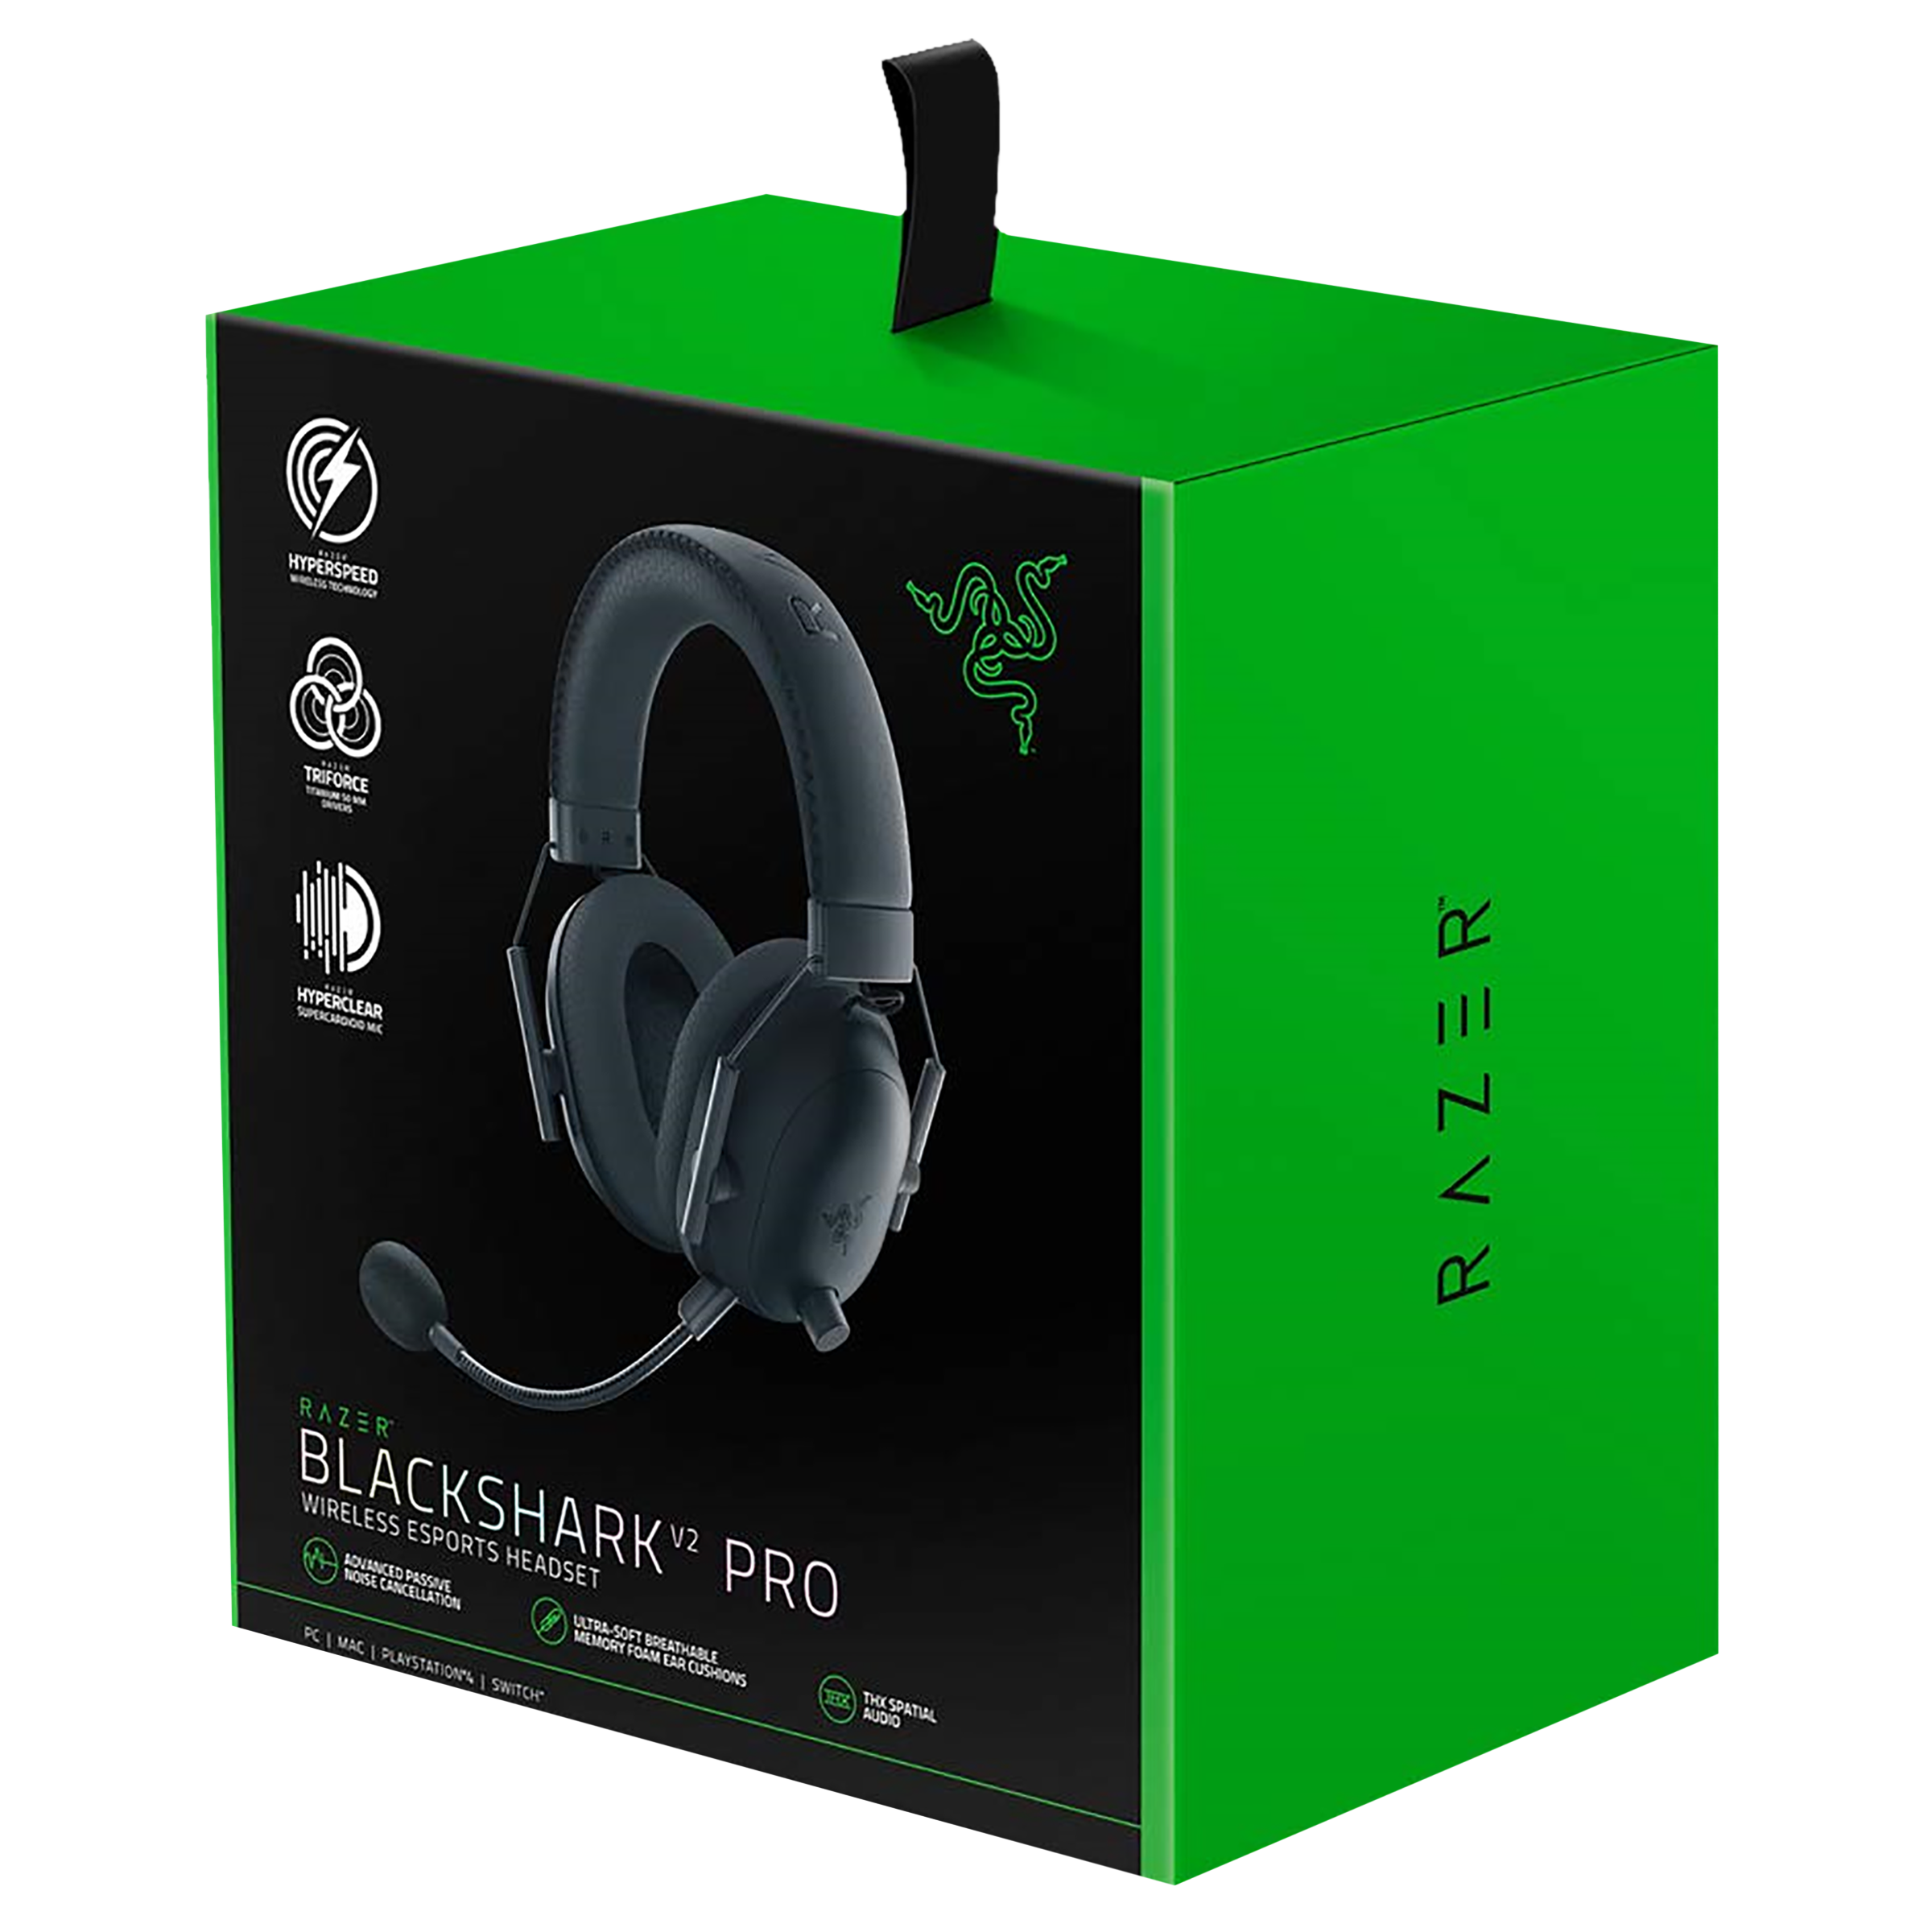 Buy Razer BlackShark V2 Pro RZ0403220100R3M1 Bluetooth Gaming Headset